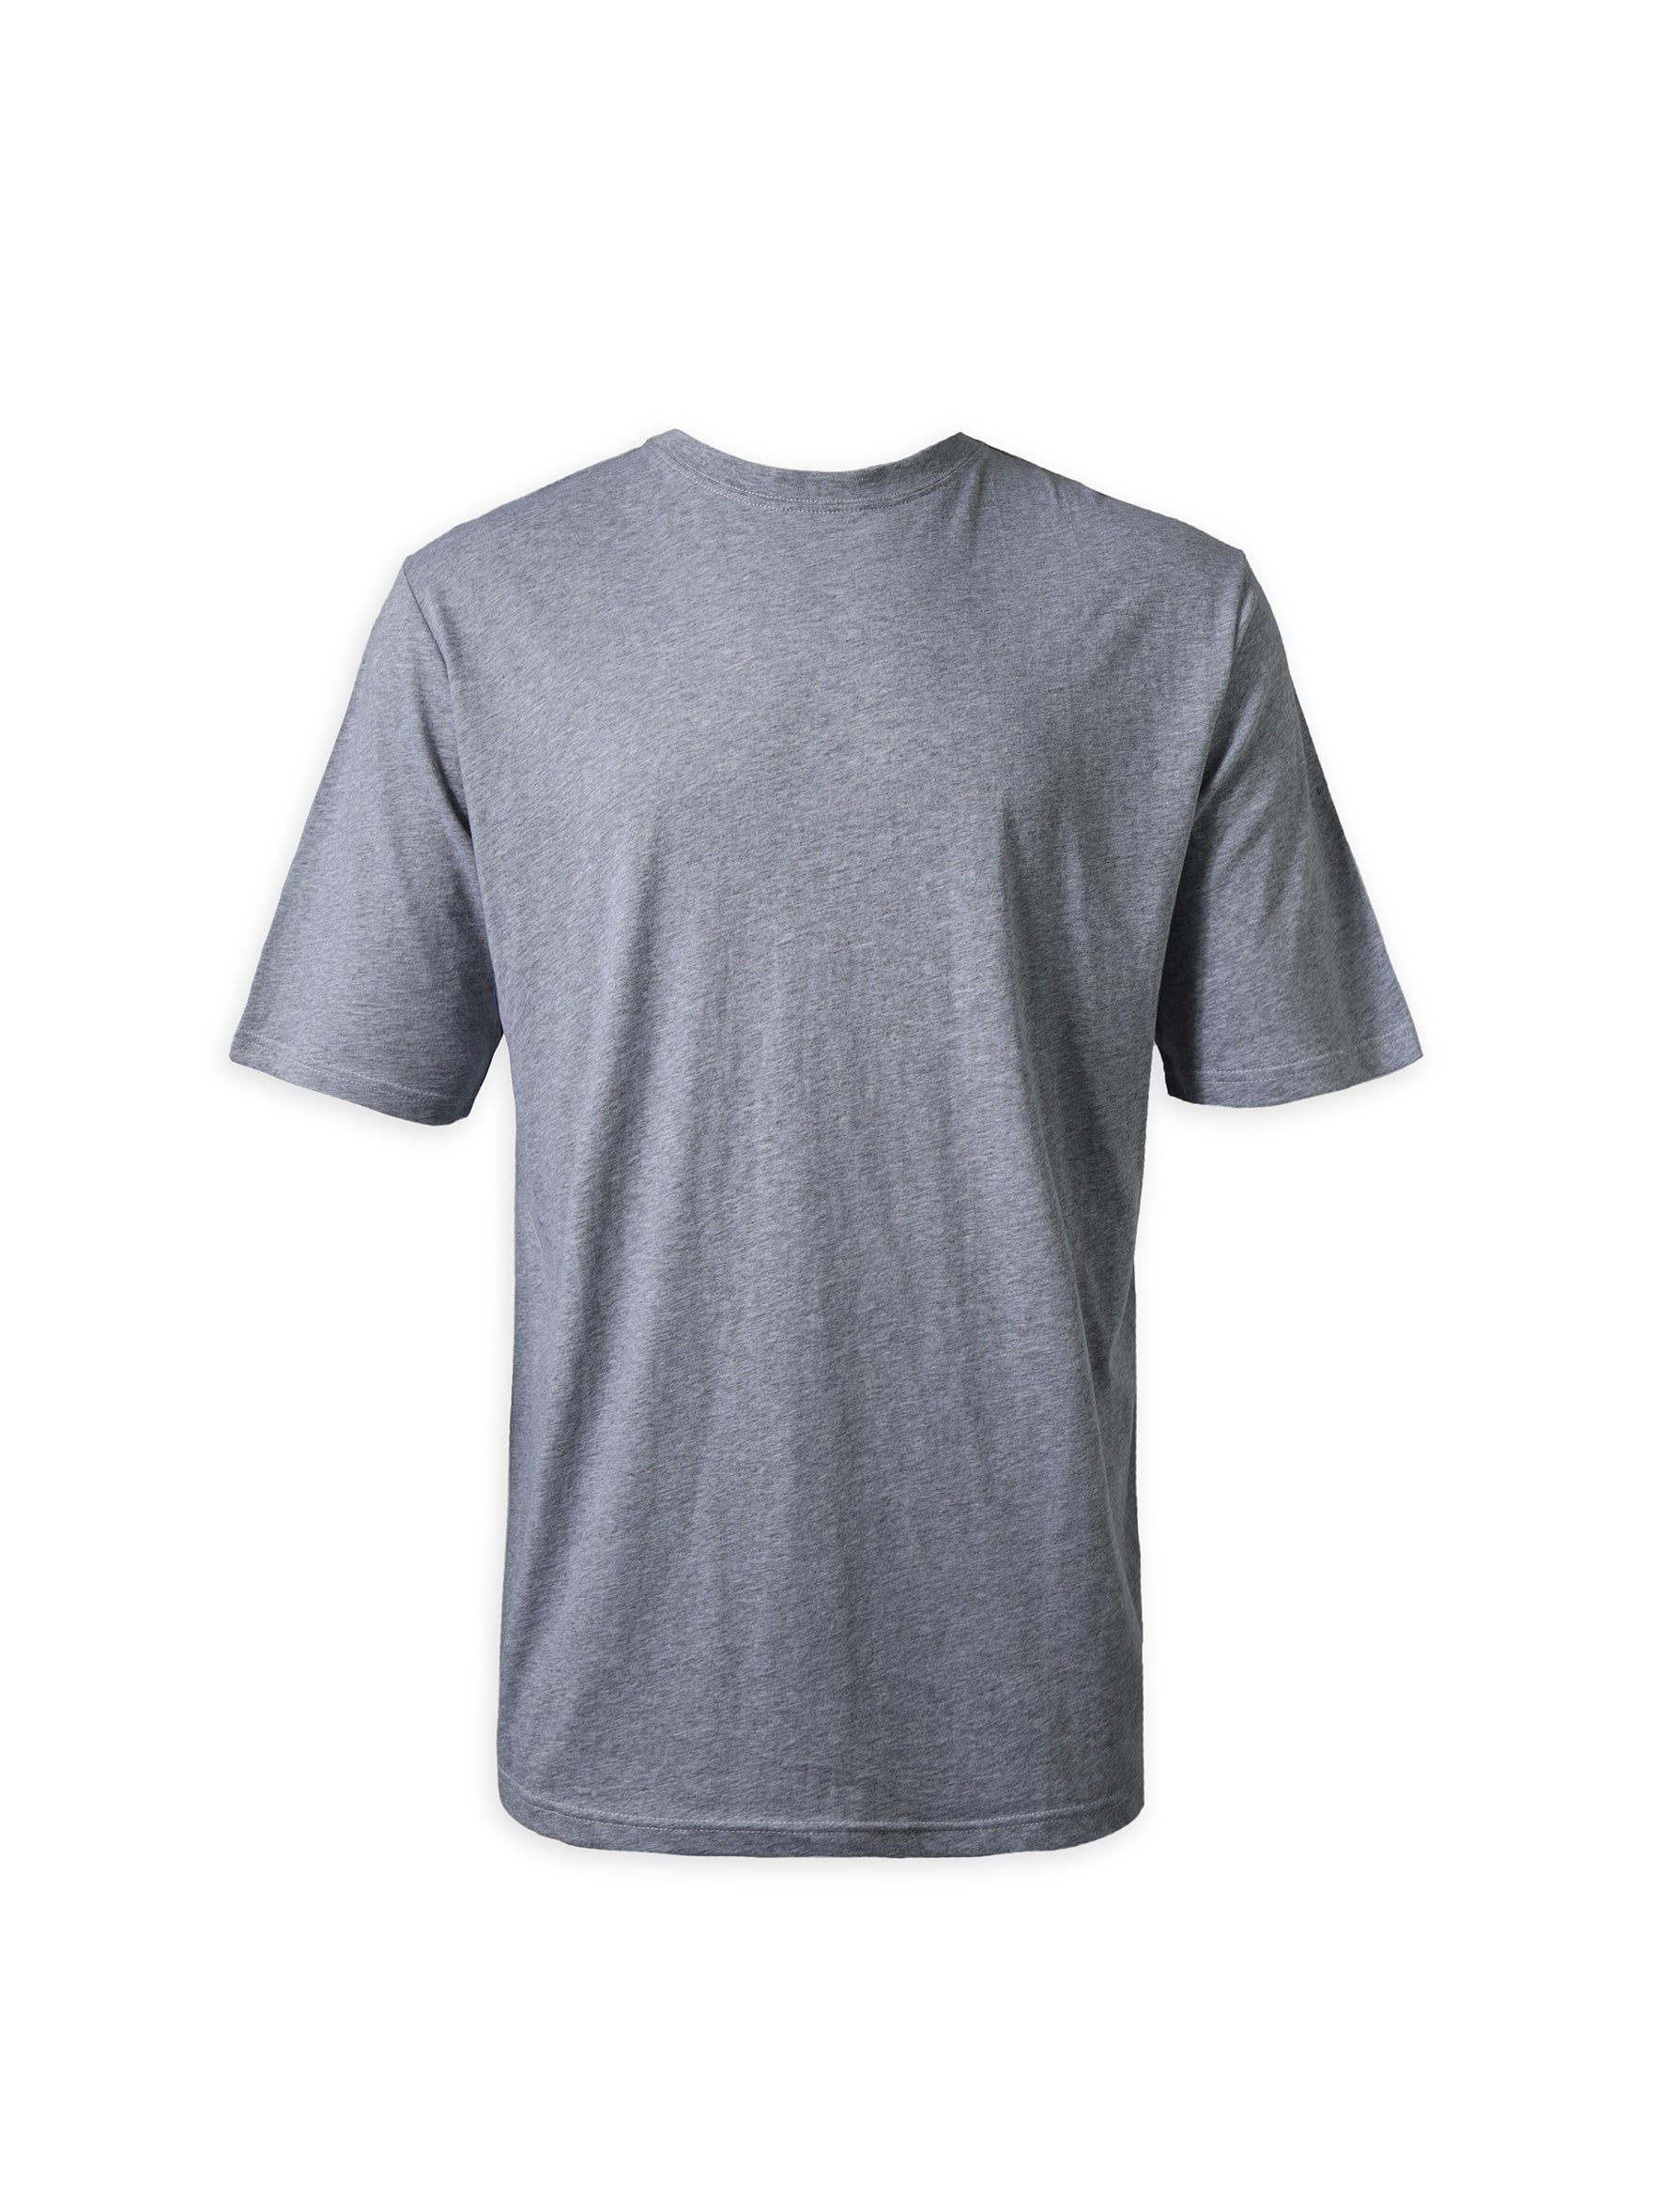 Oversized Grey T-Shirt